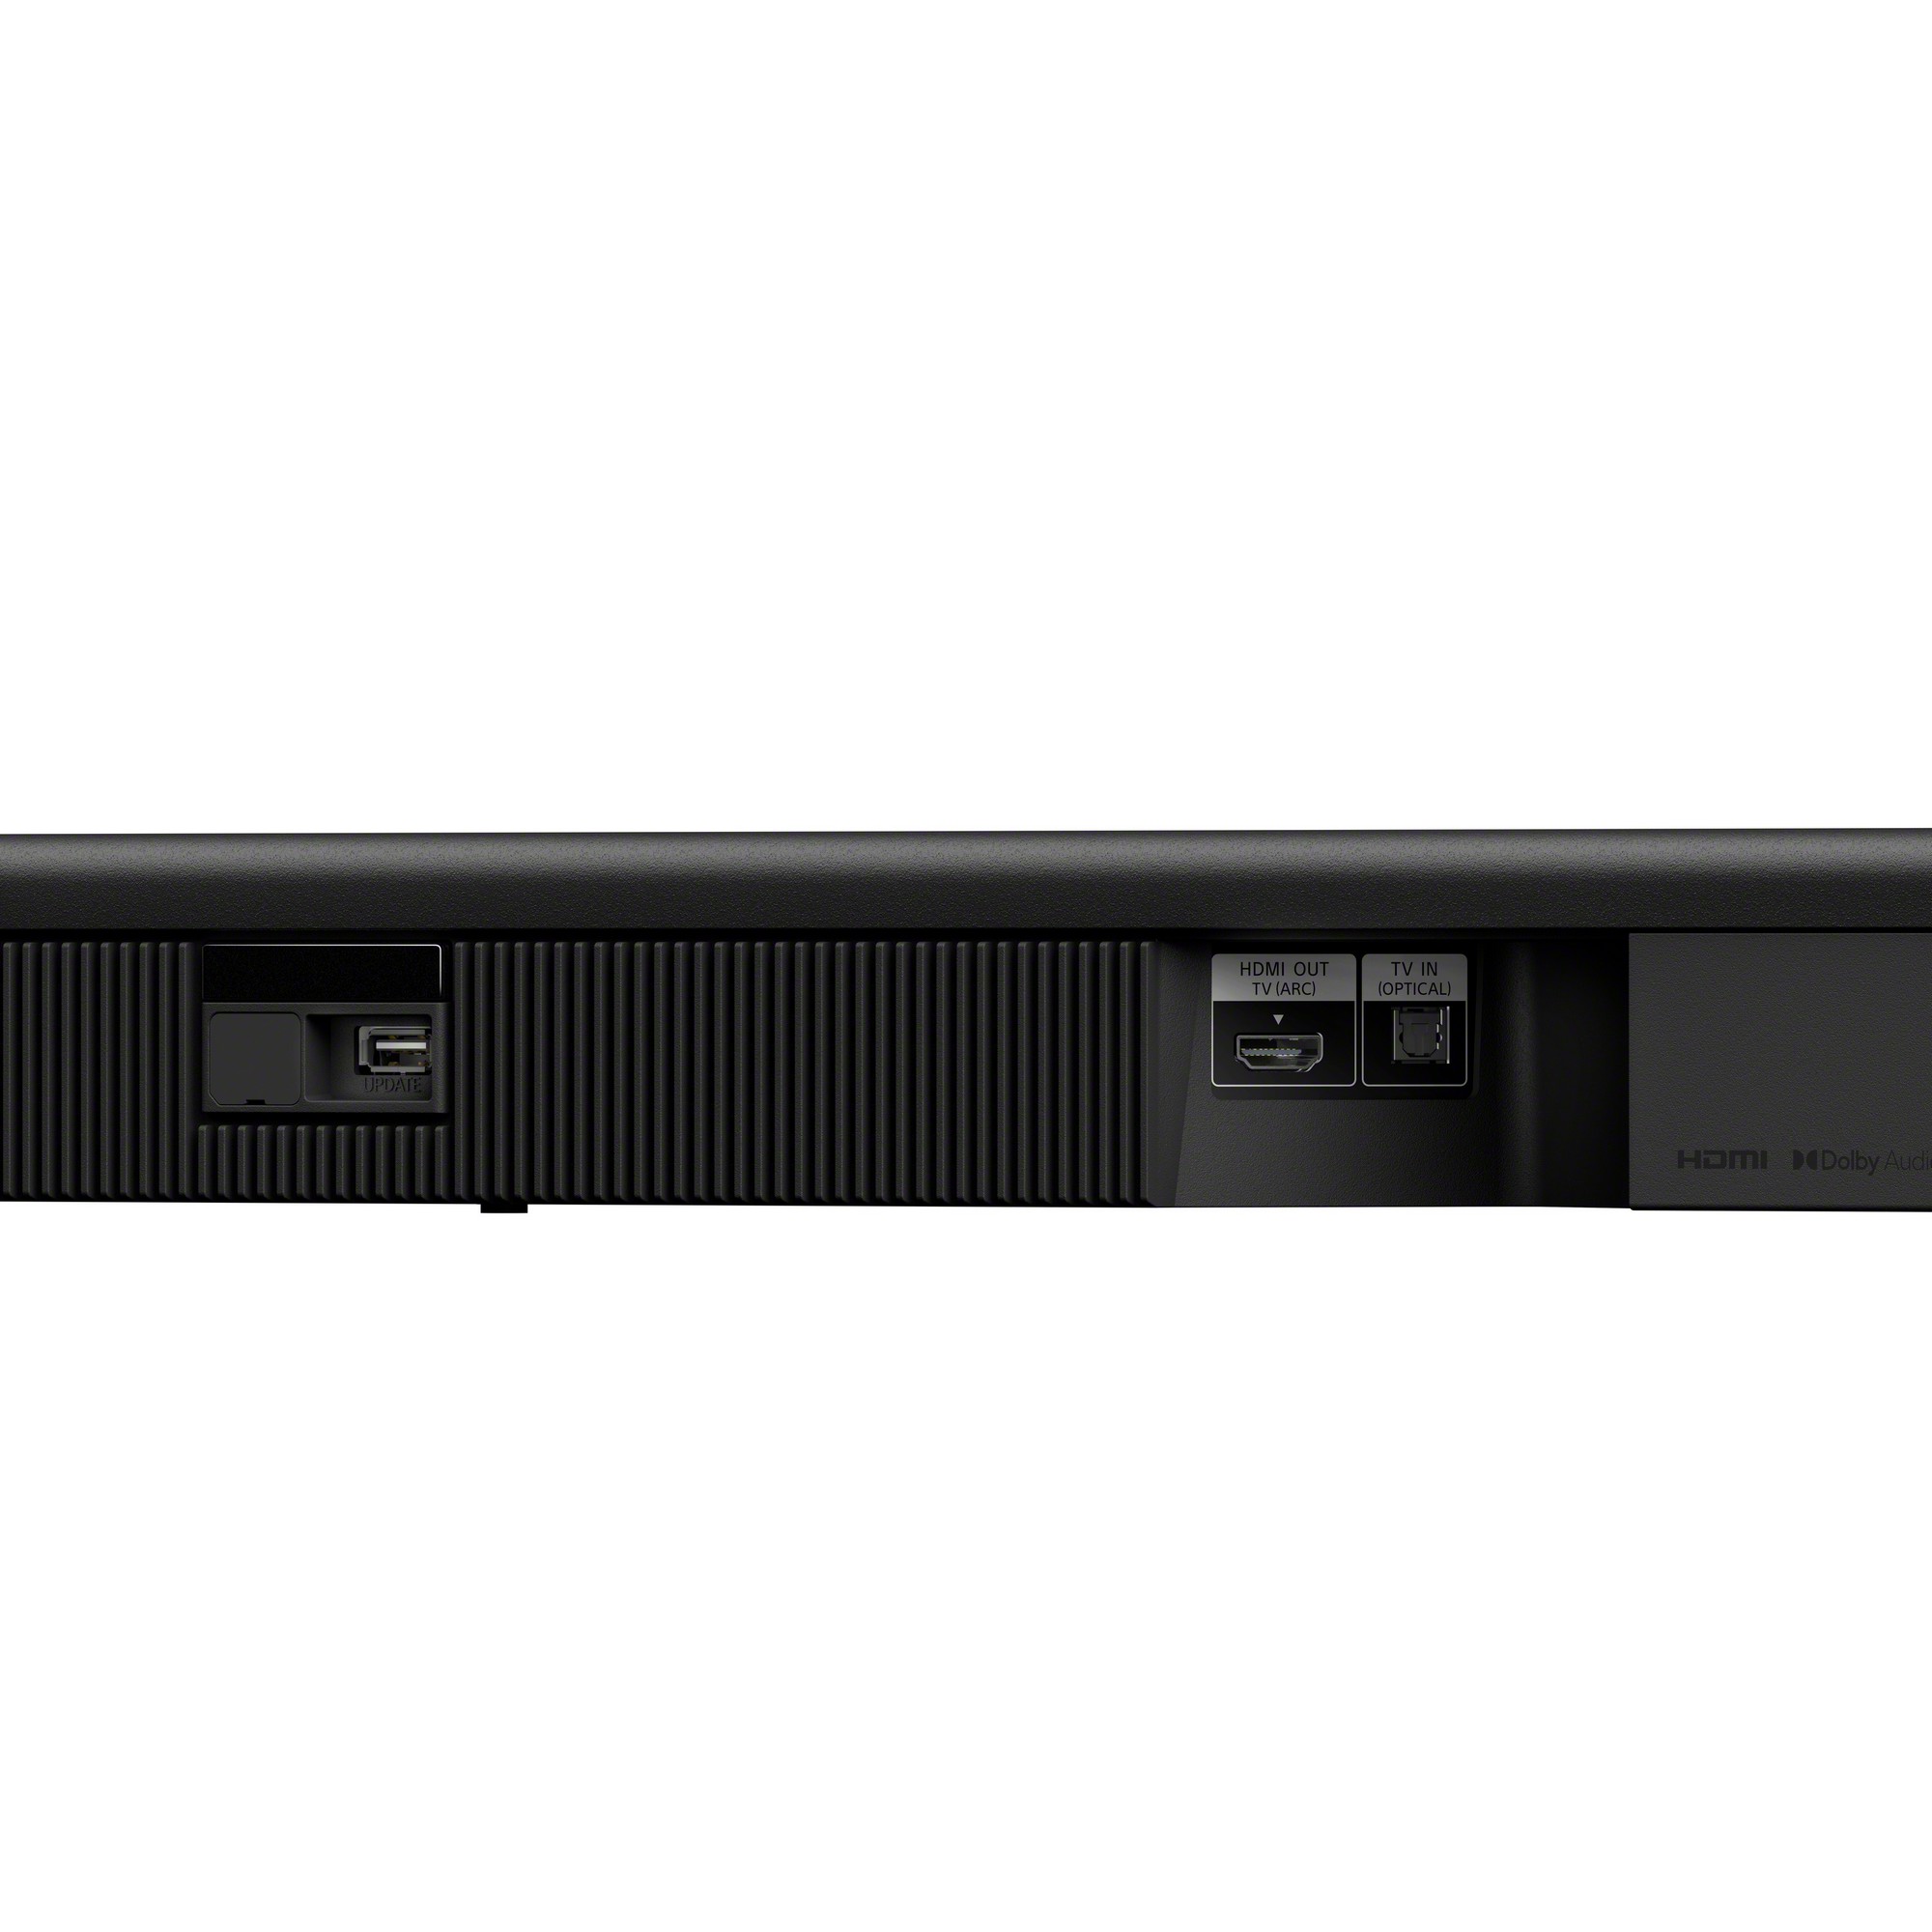 Satter Surround Sound und klare Dialoge: Sony präsentiert die neue Soundbar  HT-S400 mit leistungsstarkem kabellosem Subwoofer – Hartware